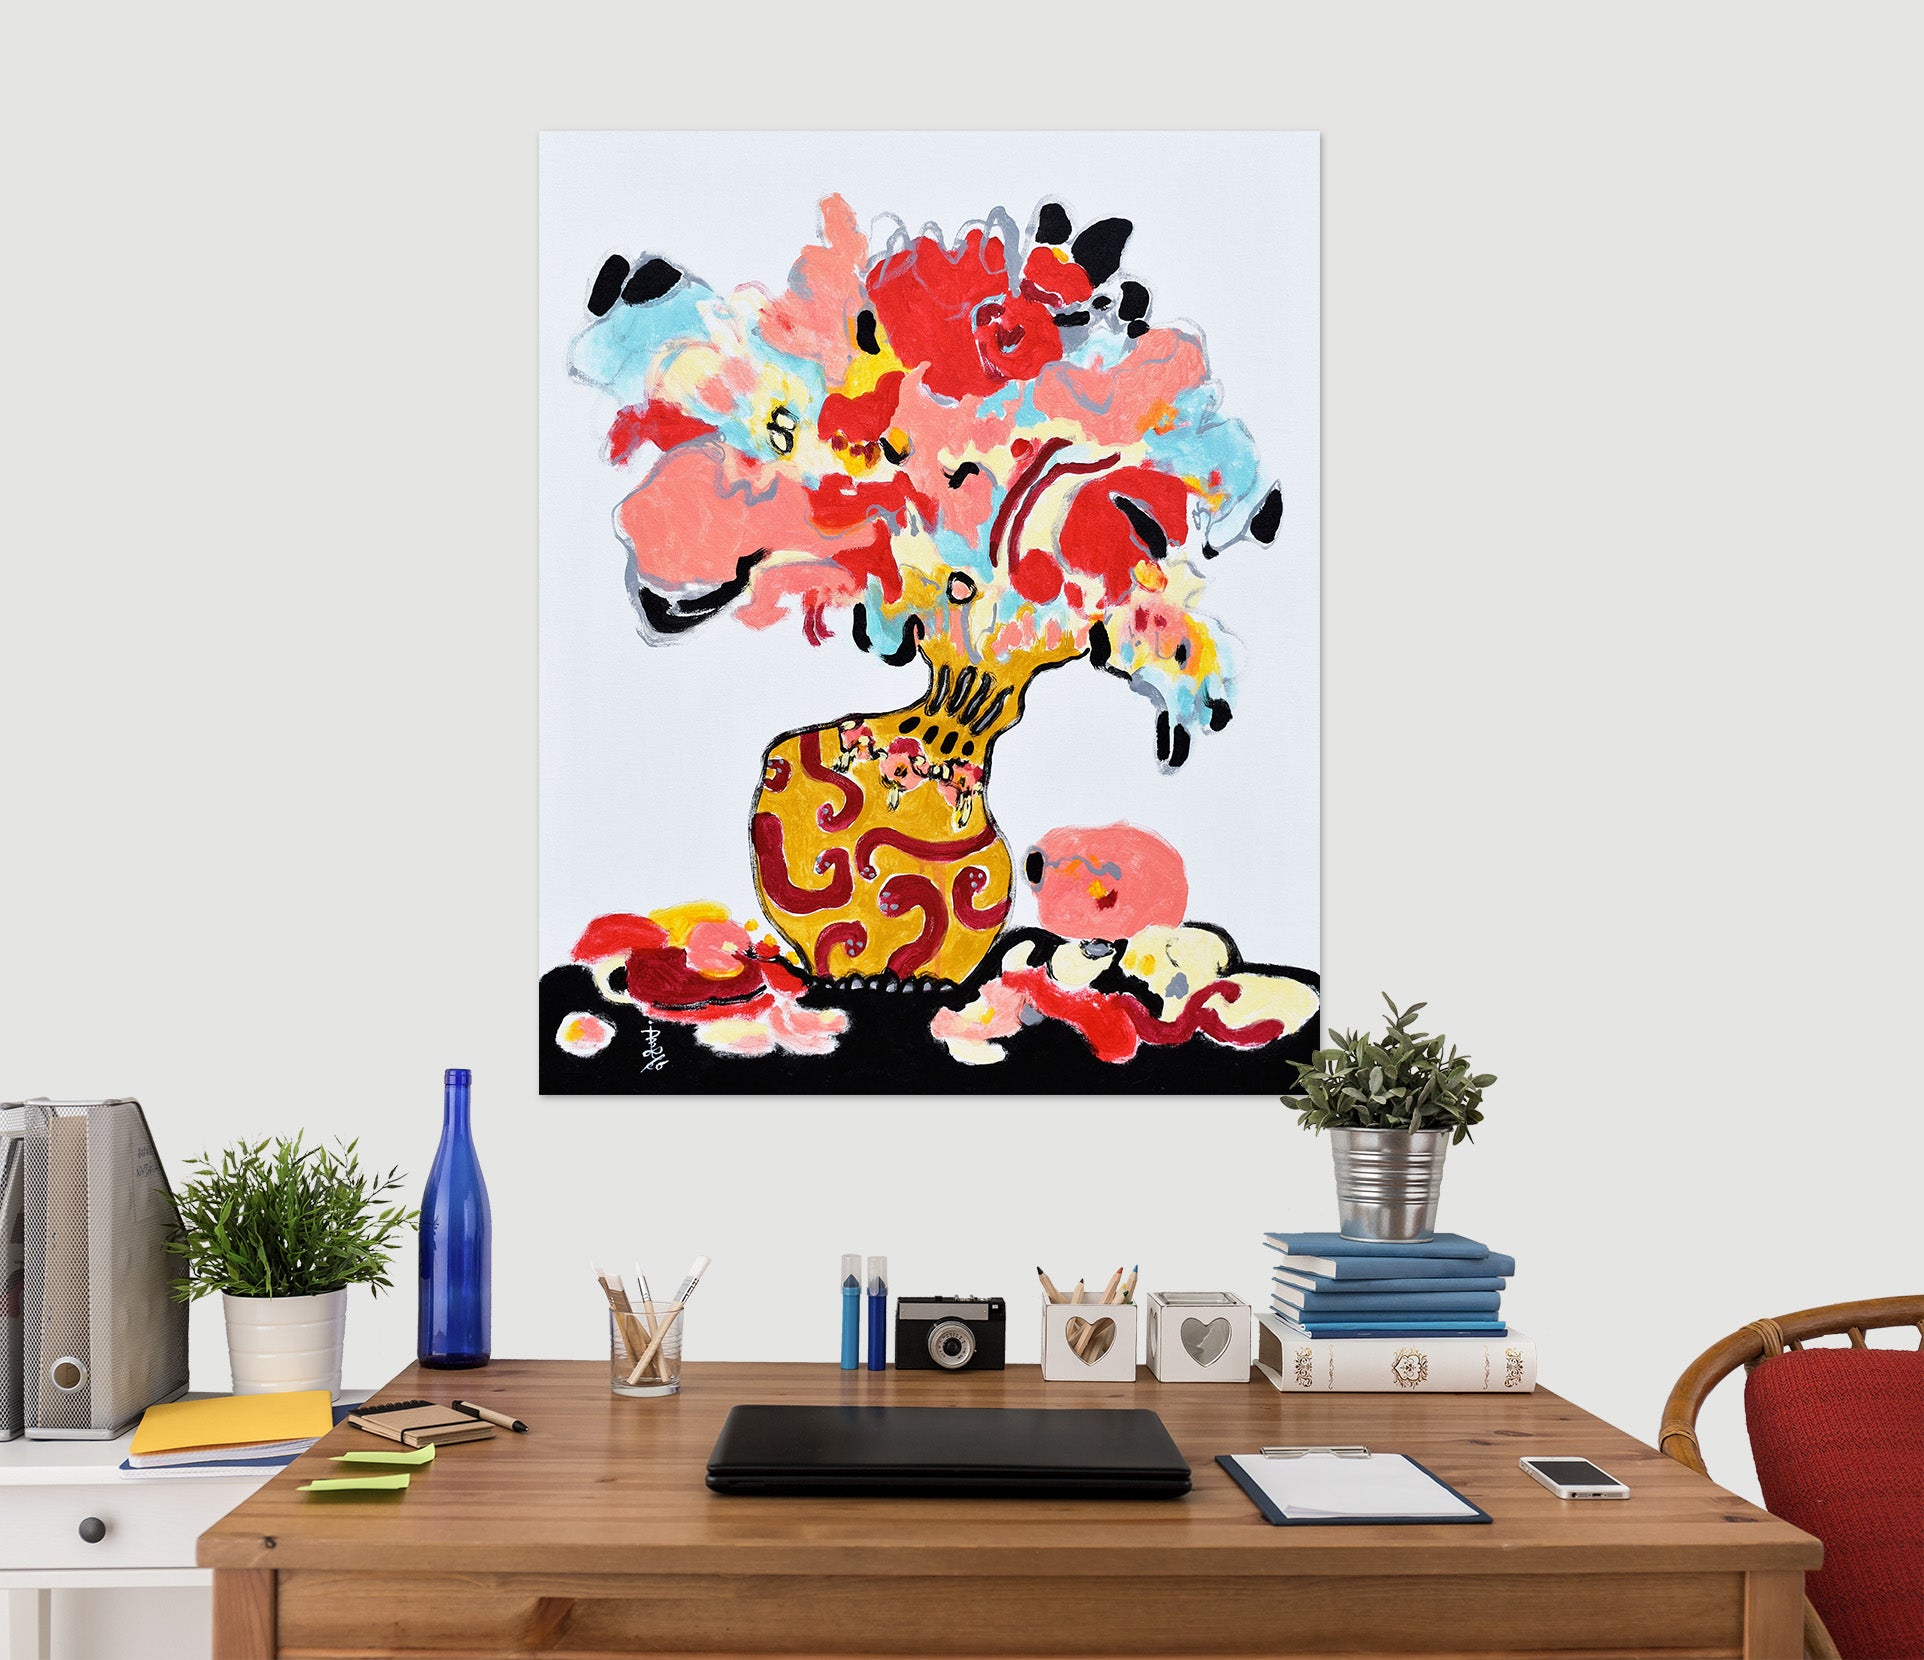 3D Art Vase 1627 Misako Chida Wall Sticker